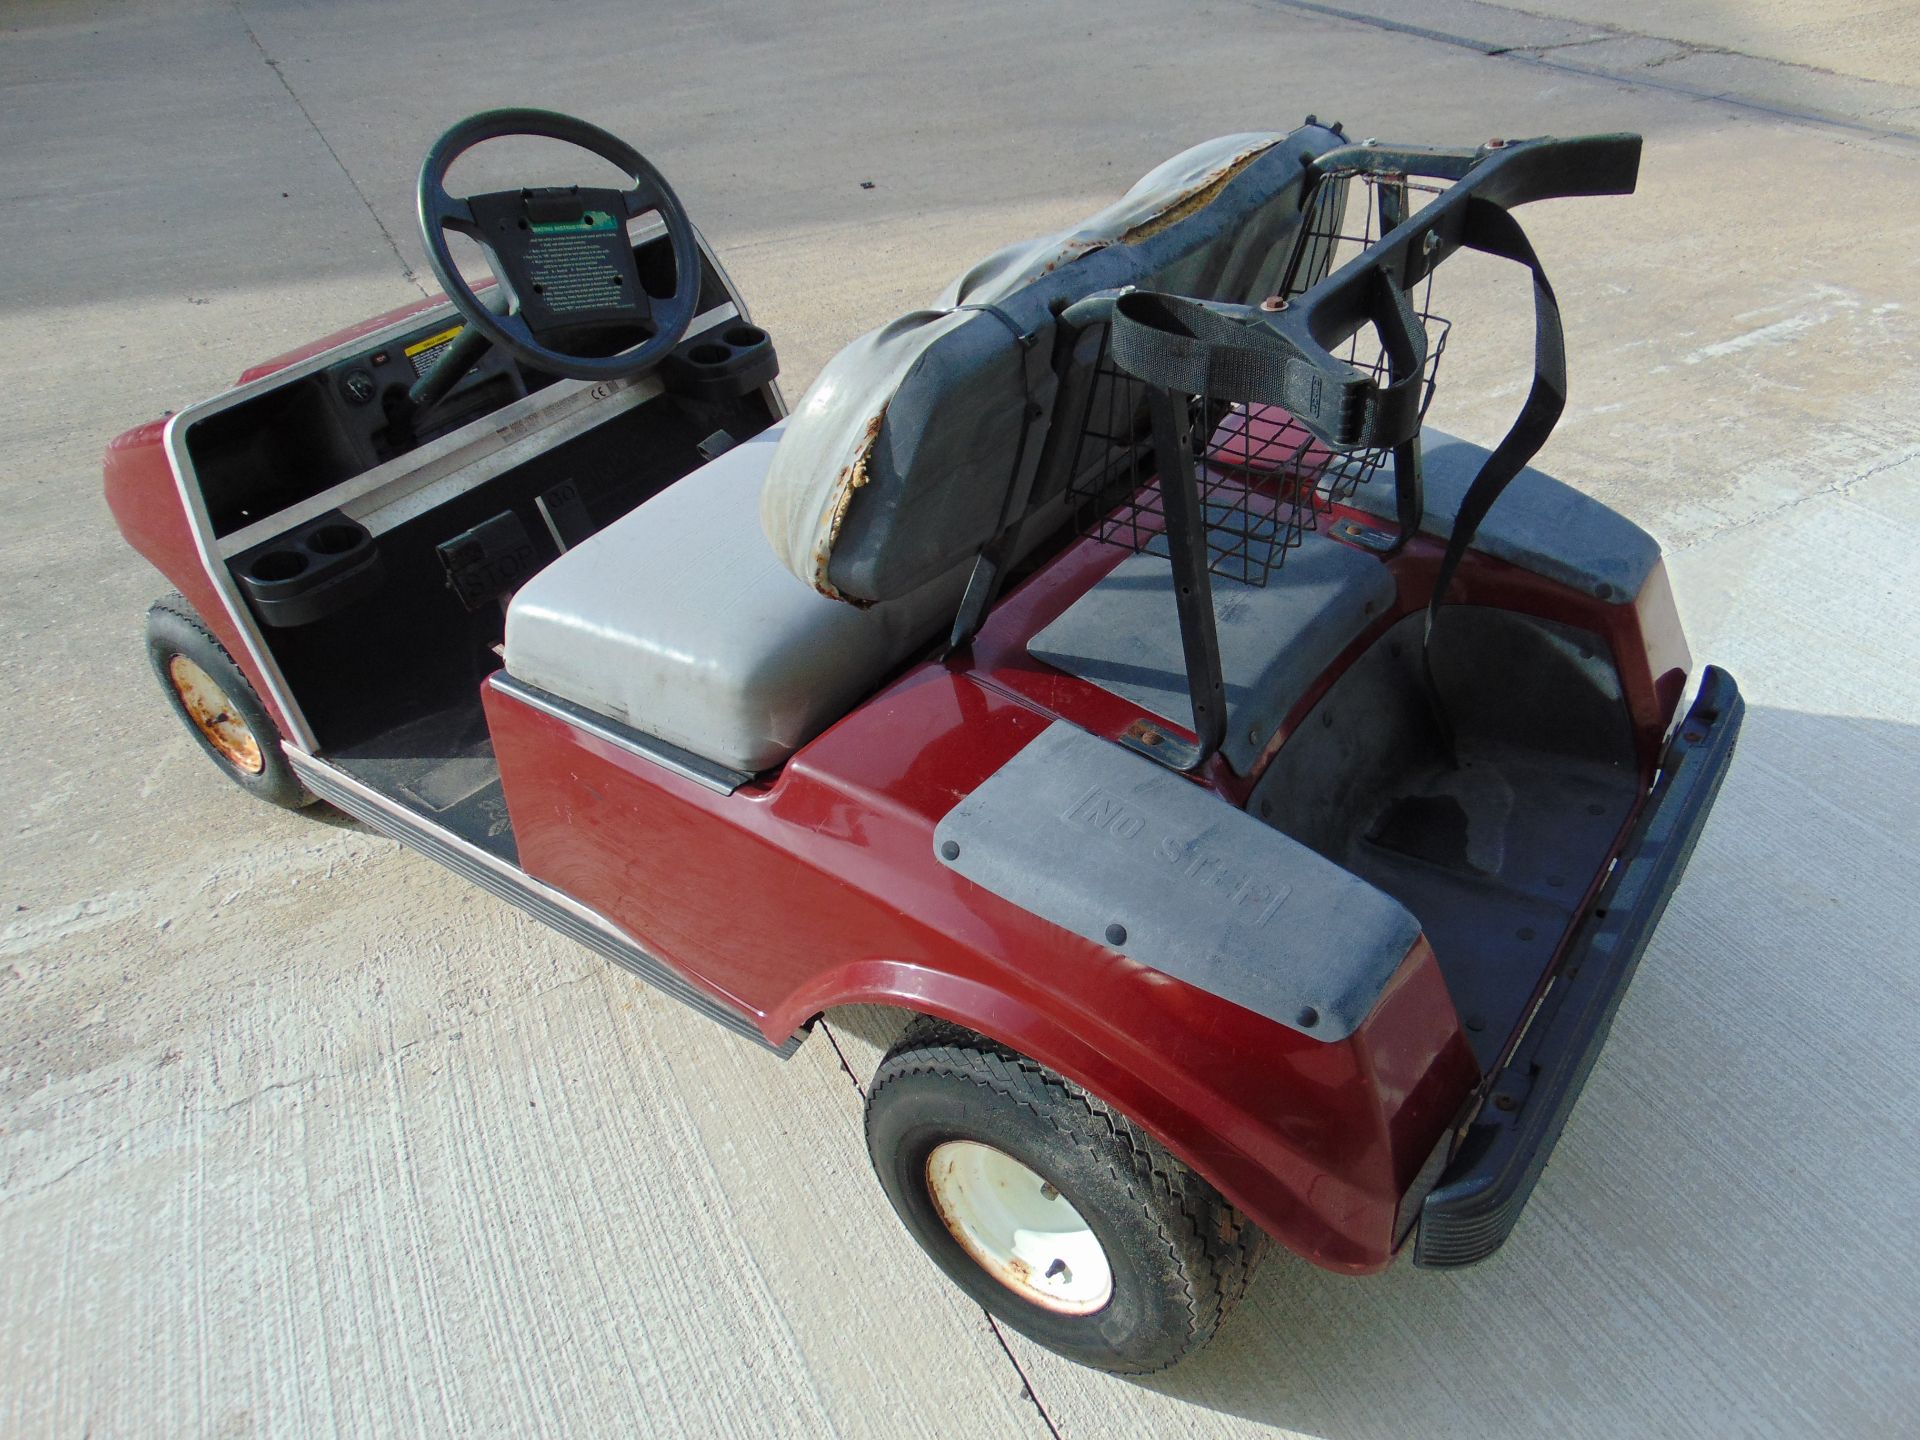 Club Car Golf Cart - Petrol Engine. - Image 5 of 16